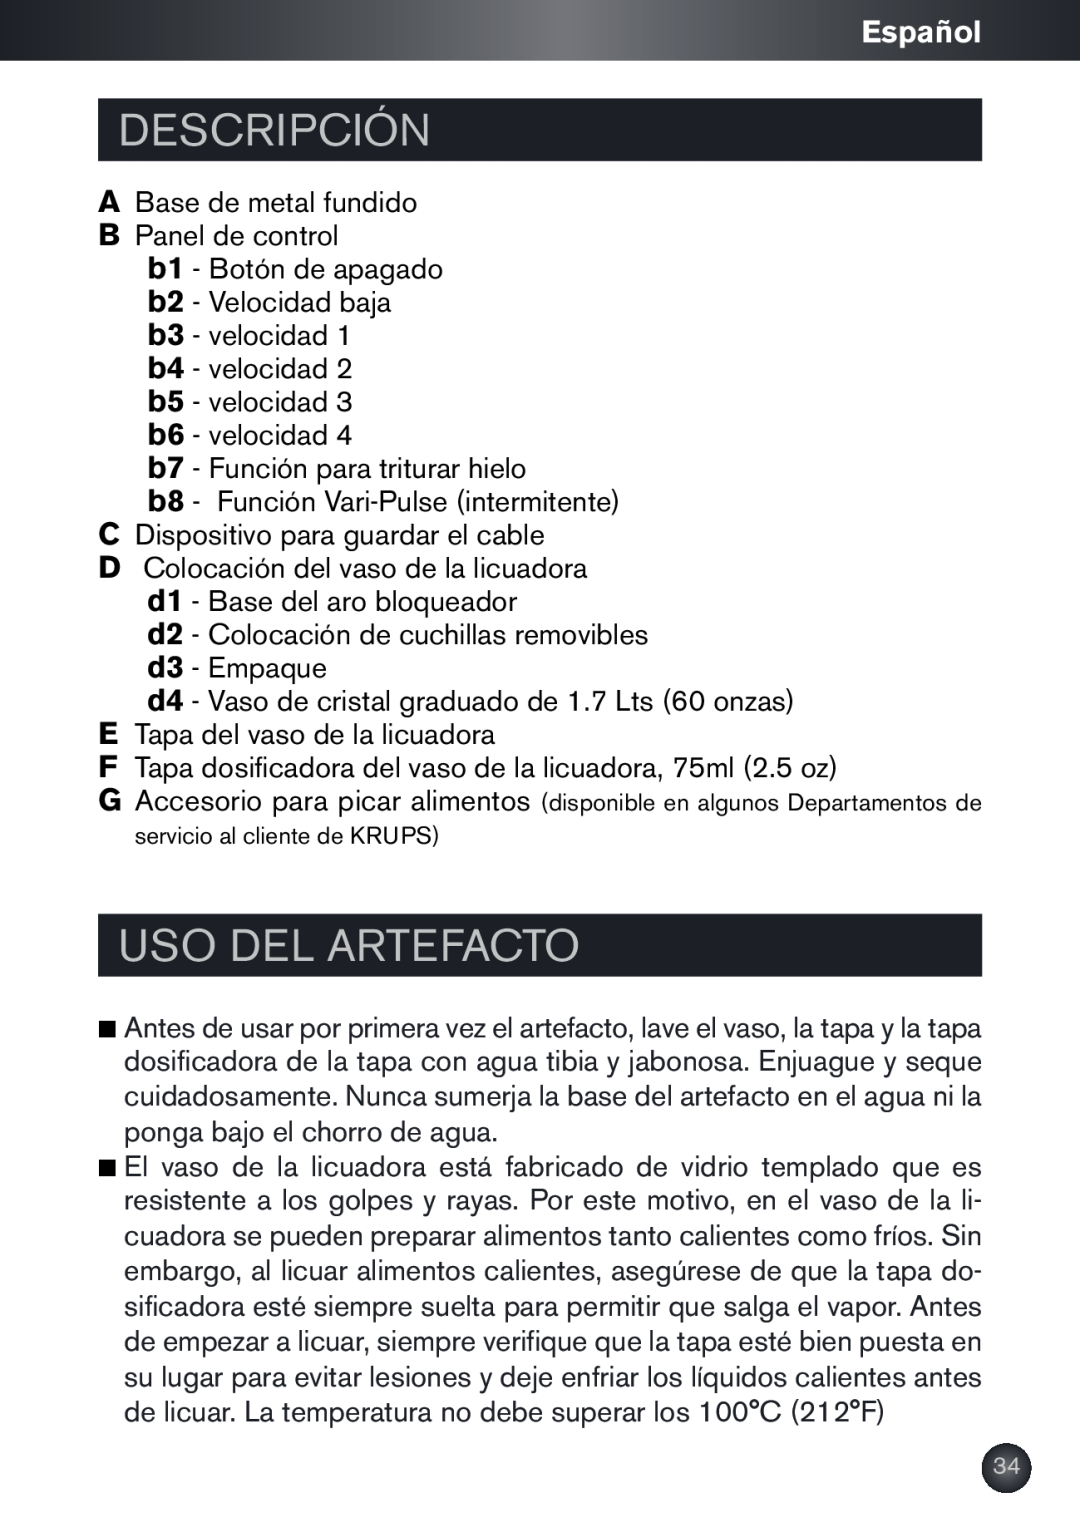 Krups KB790 manual Descripción, Uso Del Artefacto, Español 